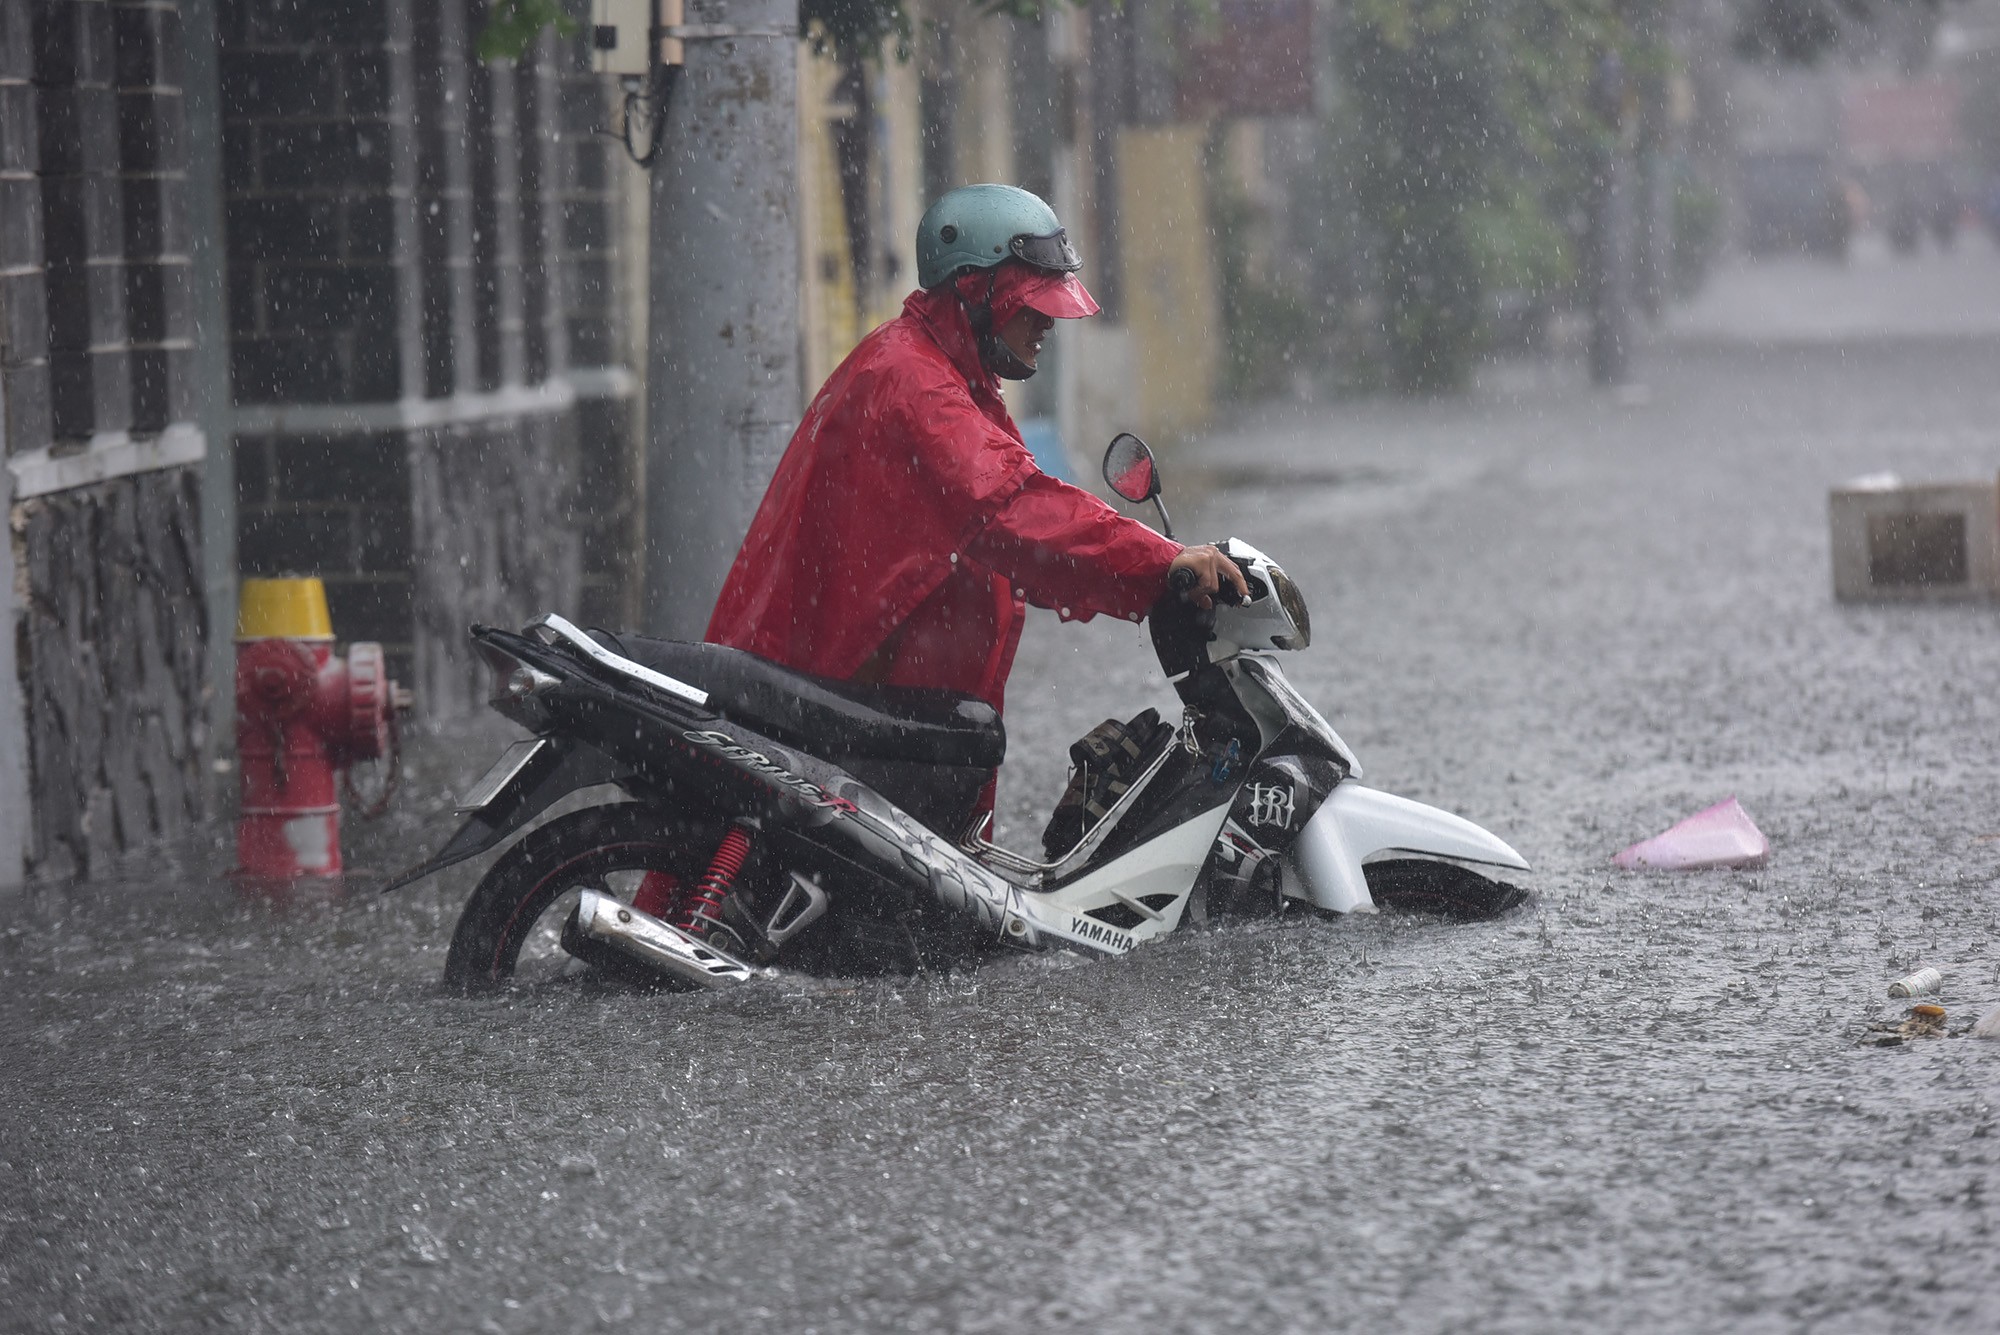 Đường ở TP.HCM ngập sâu trong mưa lớn, nhiều người ngã nhào - 9